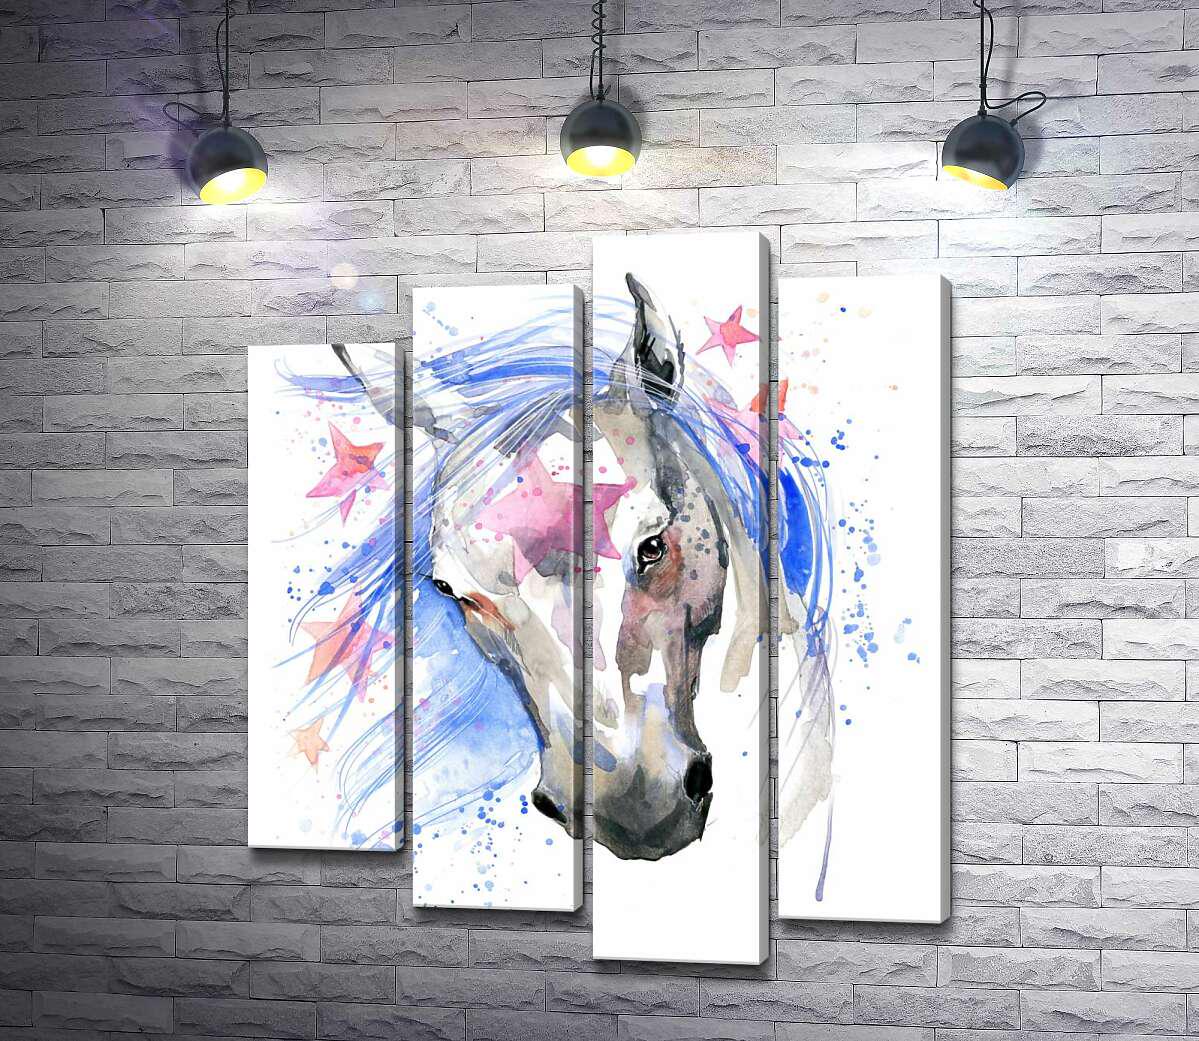 ᐉ Модульная картина ArtPoster Розовые звезды запутались в голубой гриве  фантастической лошади 112x131 см Модуль №21 (001894)